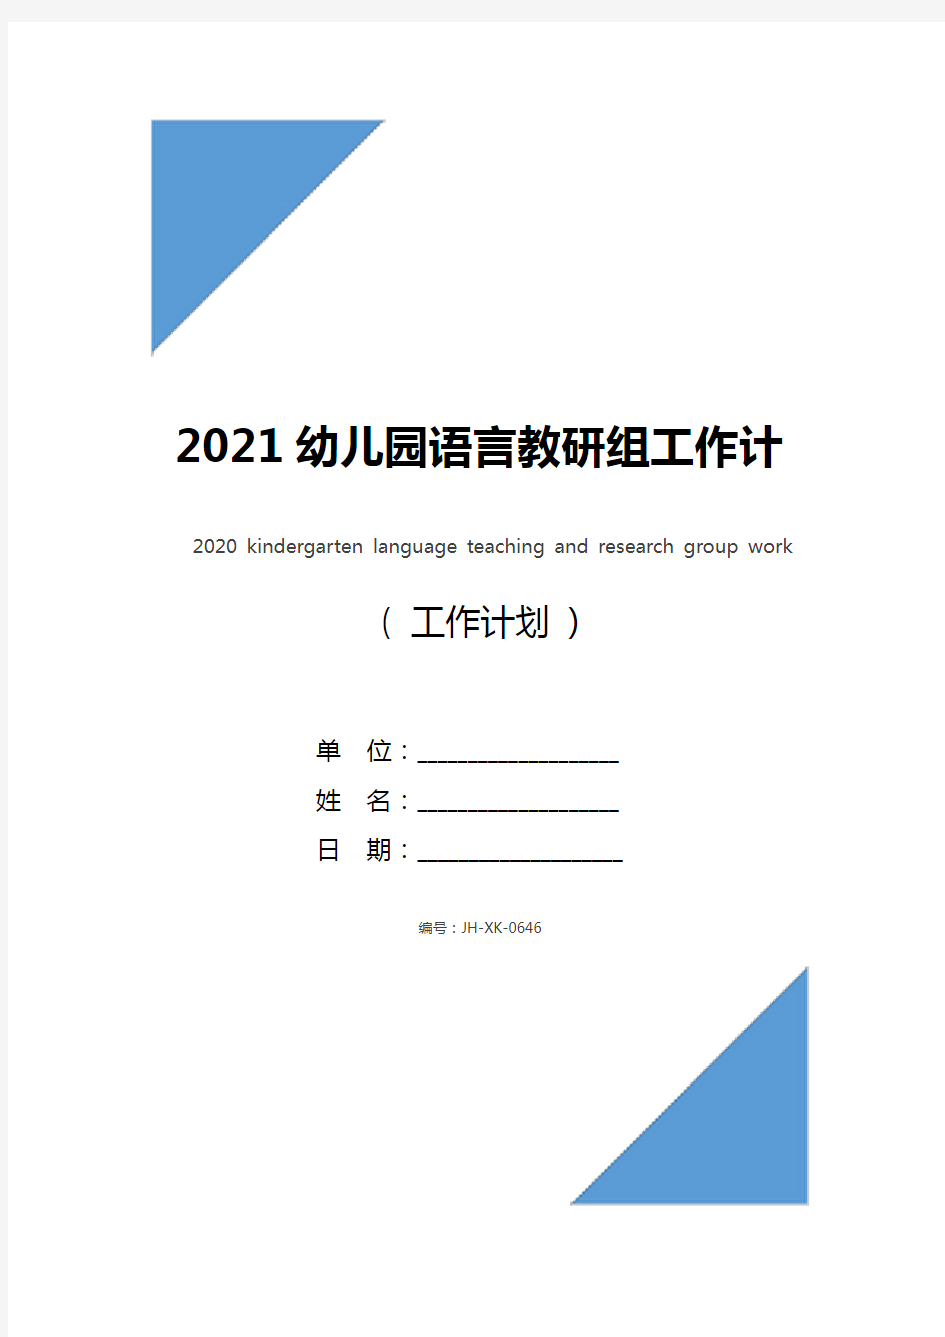 2021幼儿园语言教研组工作计划(标准版)